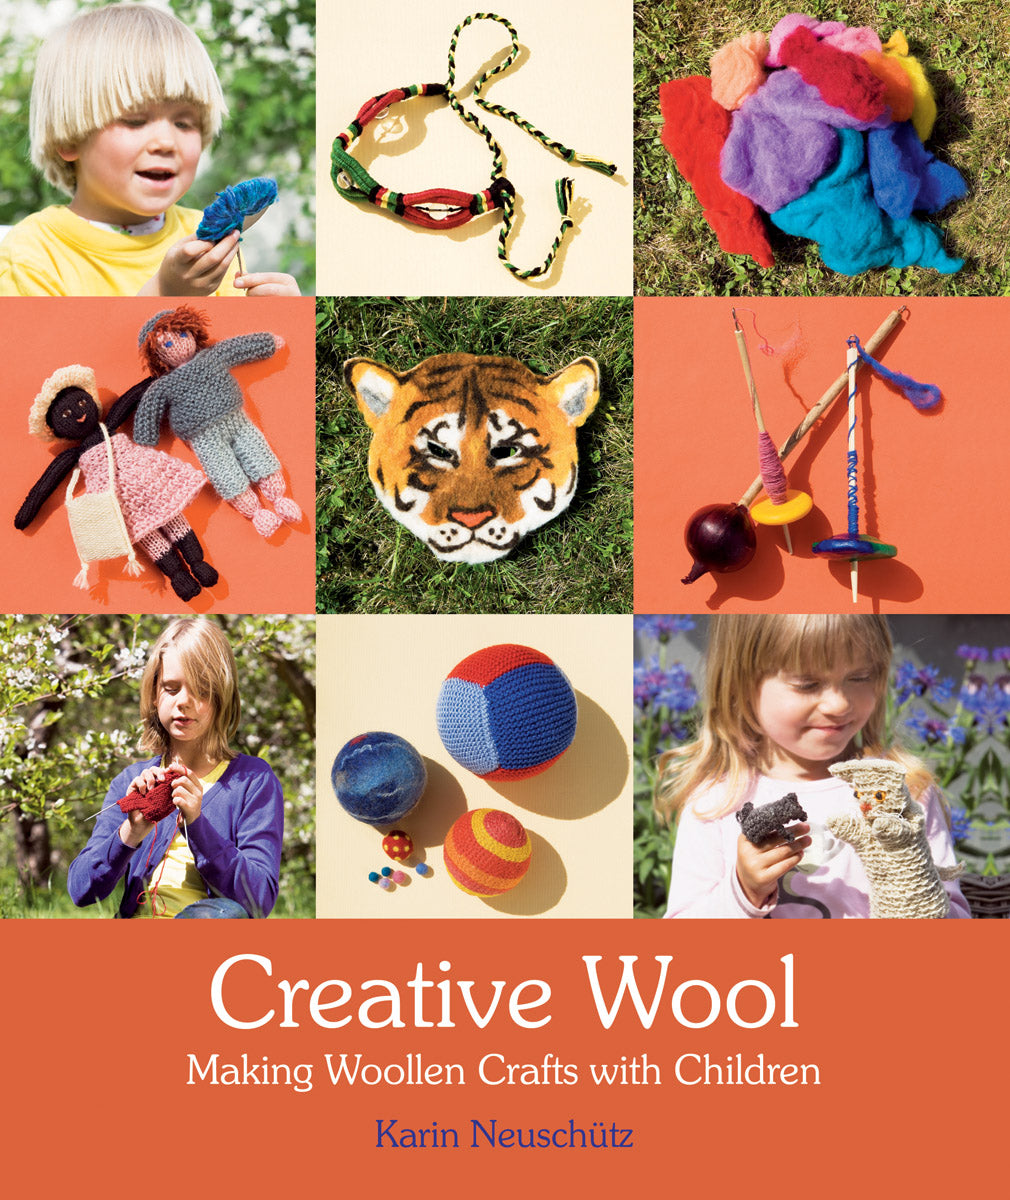 Creative Wool: Making Woollen Crafts with Children by Karin Neuschütz